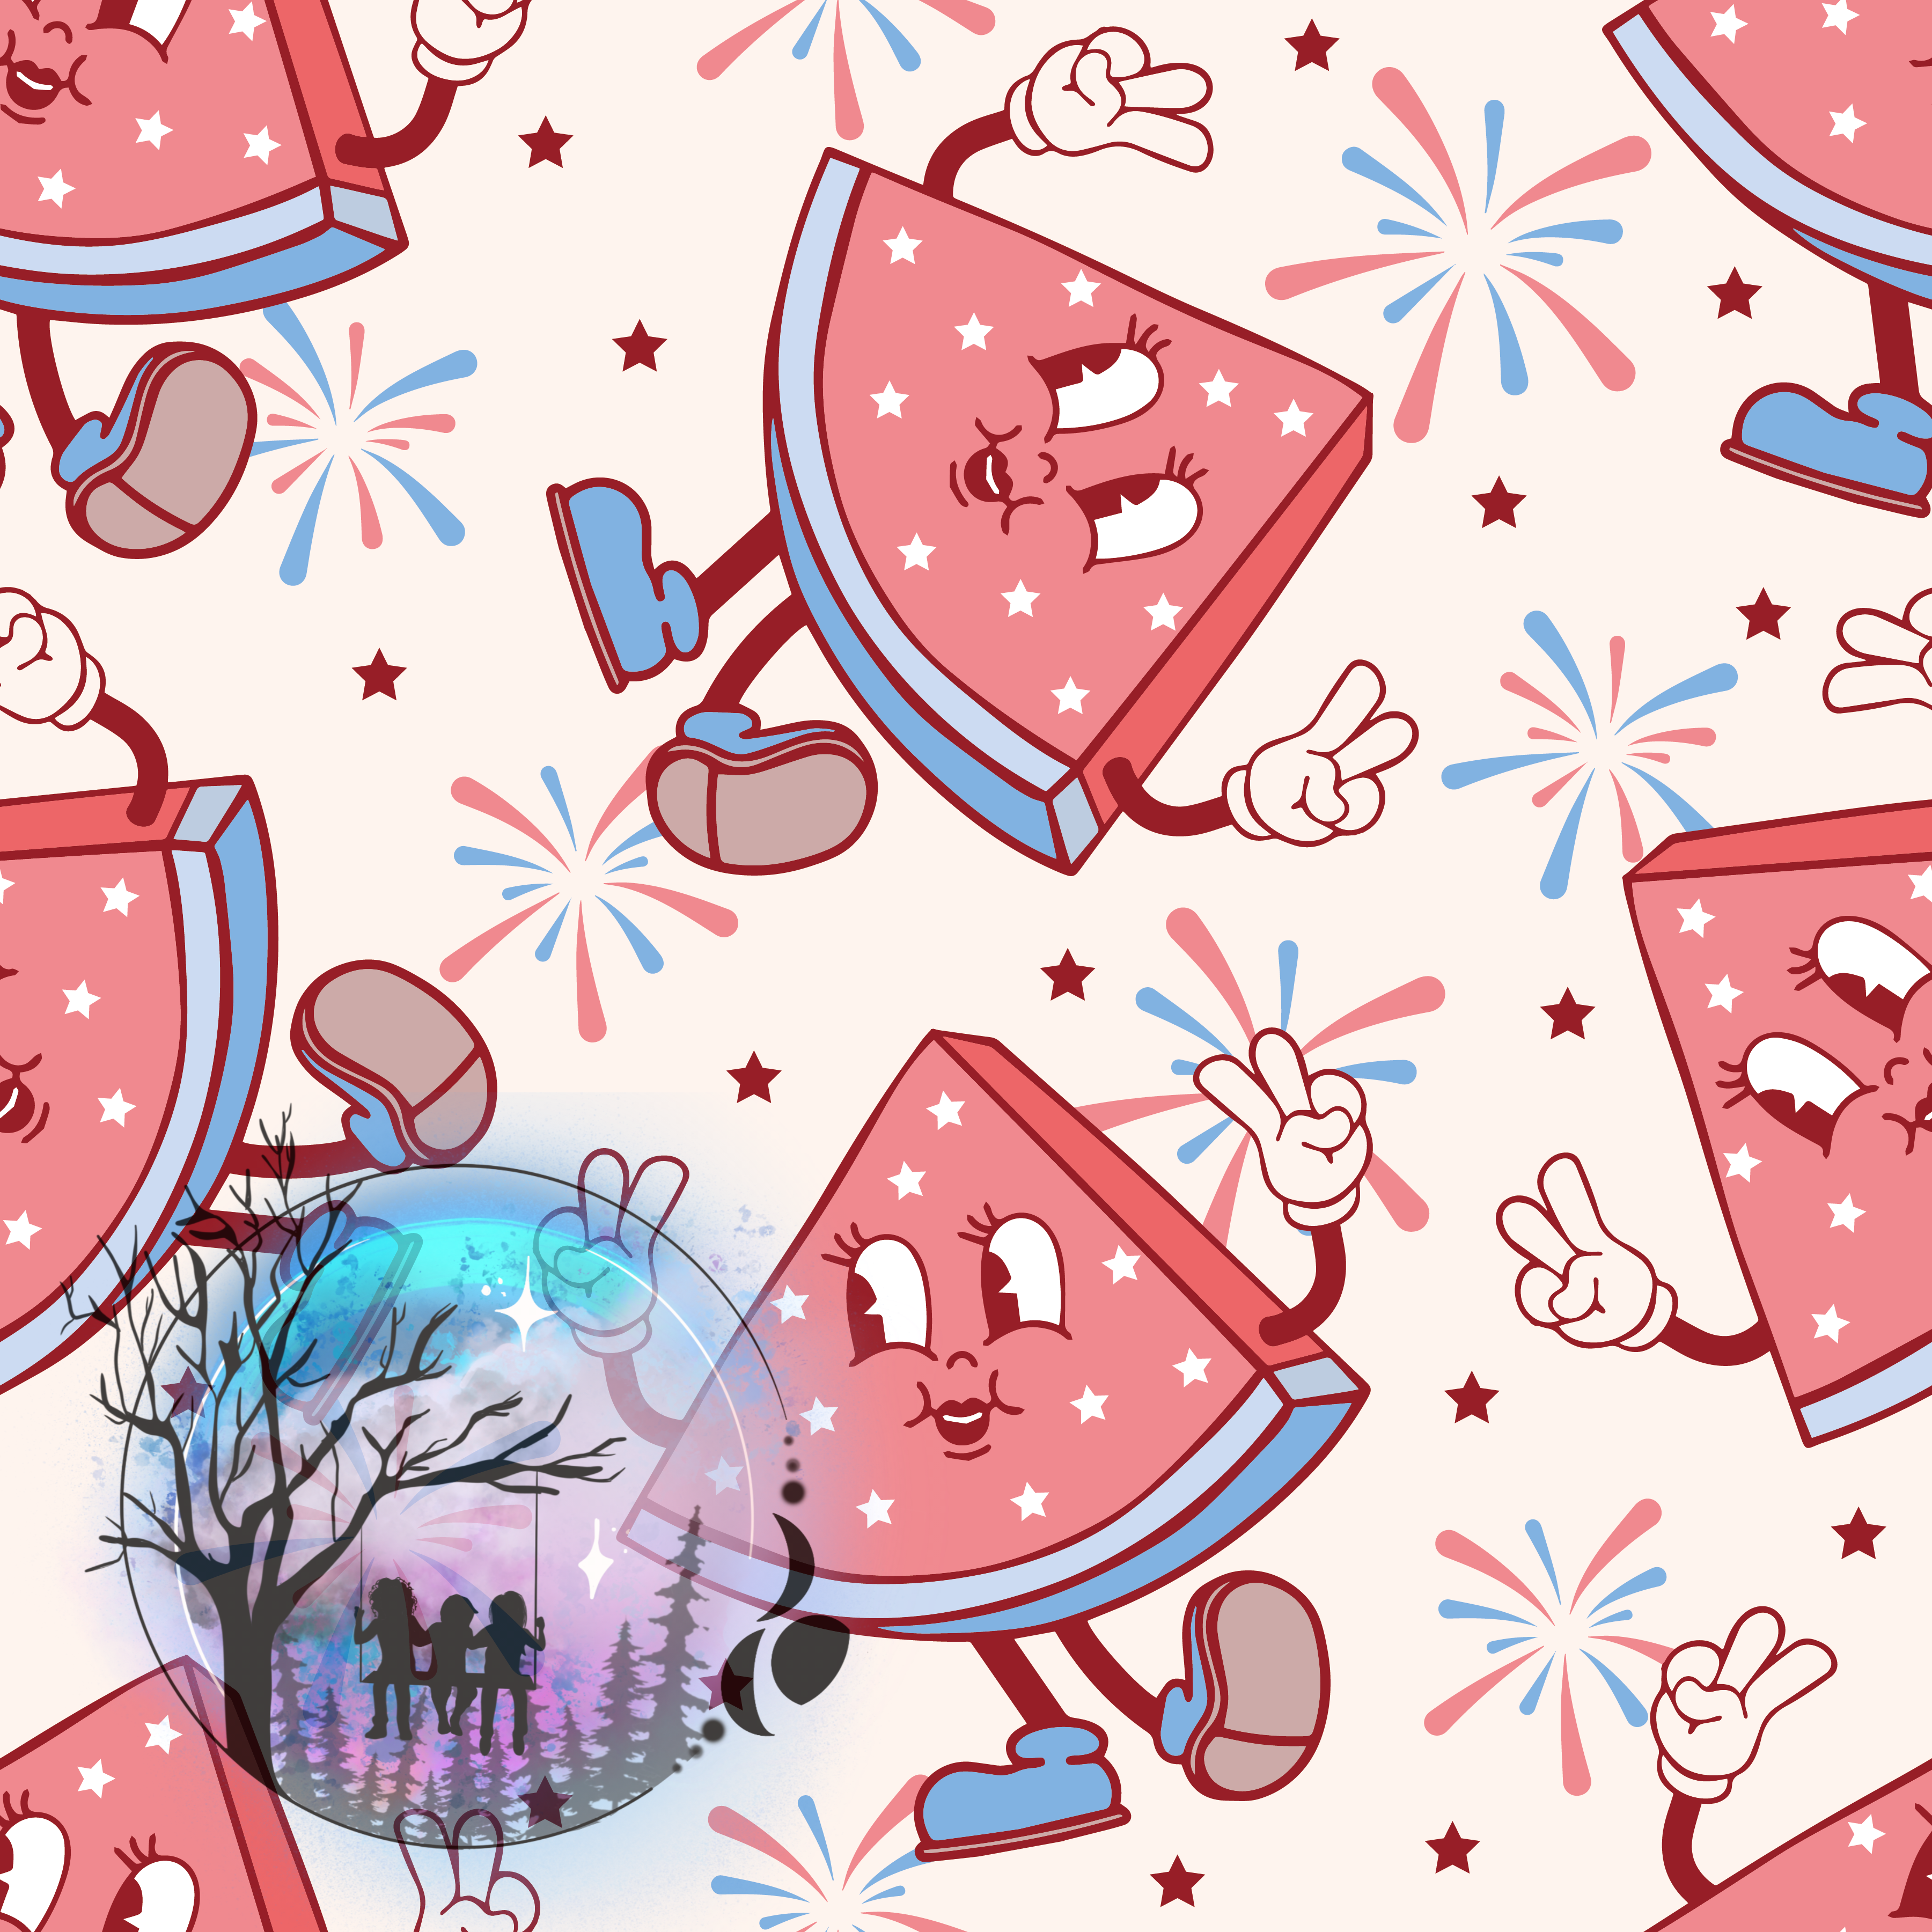 Dancing watermelon